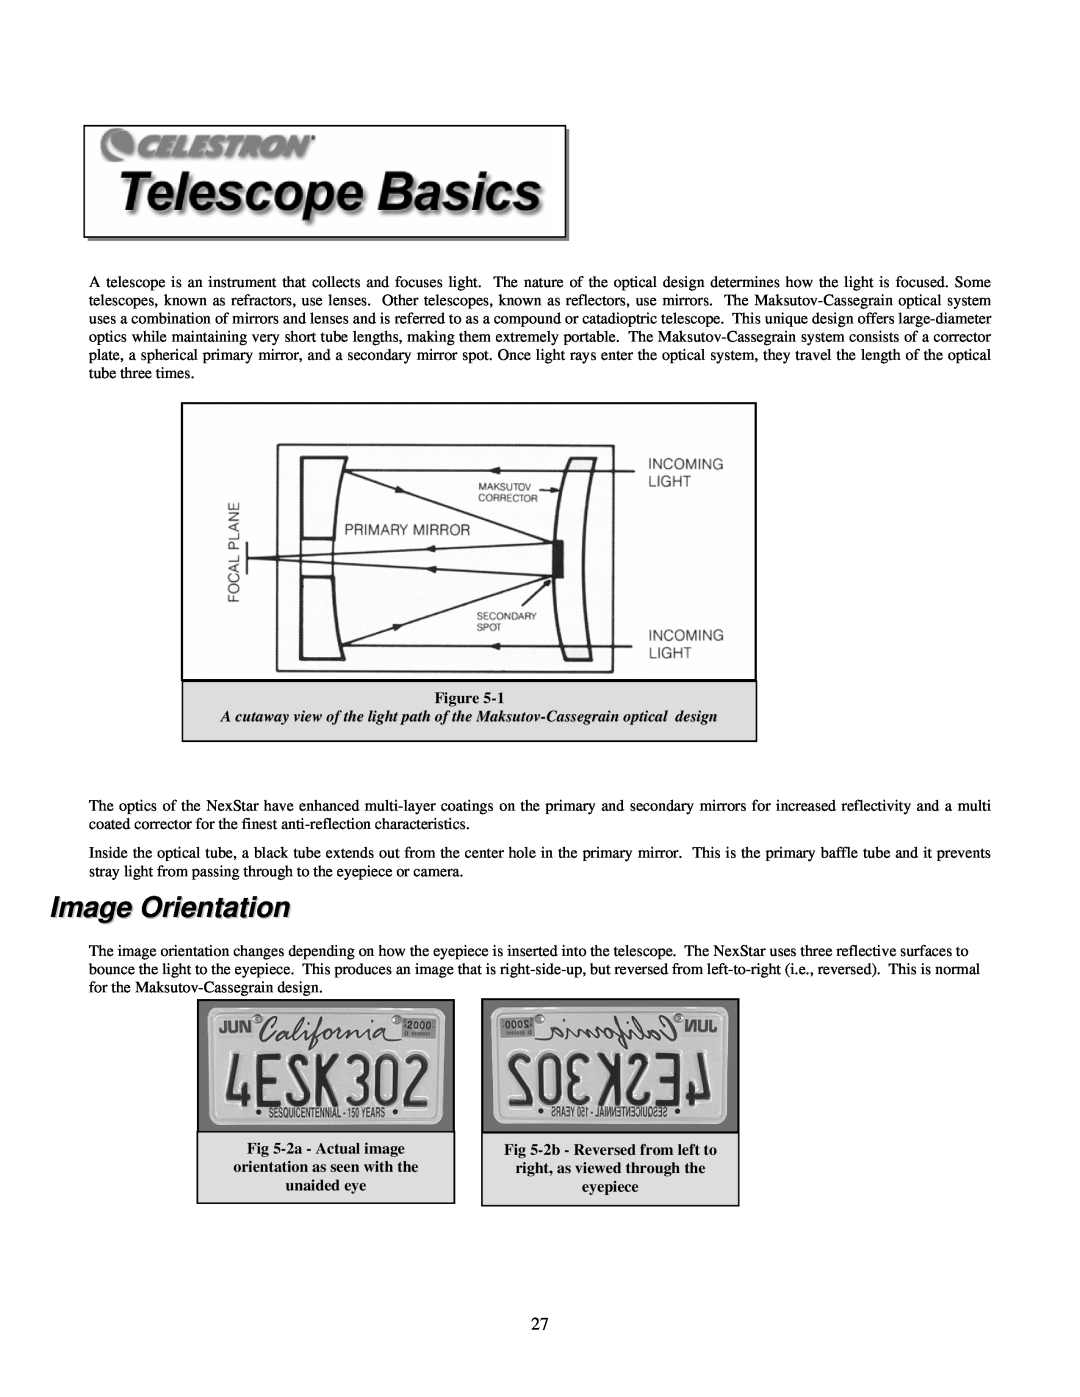 Celestron 4SE instruction manual Image Orientation, 2a - Actual image orientation as seen with the unaided eye, eyepiece 